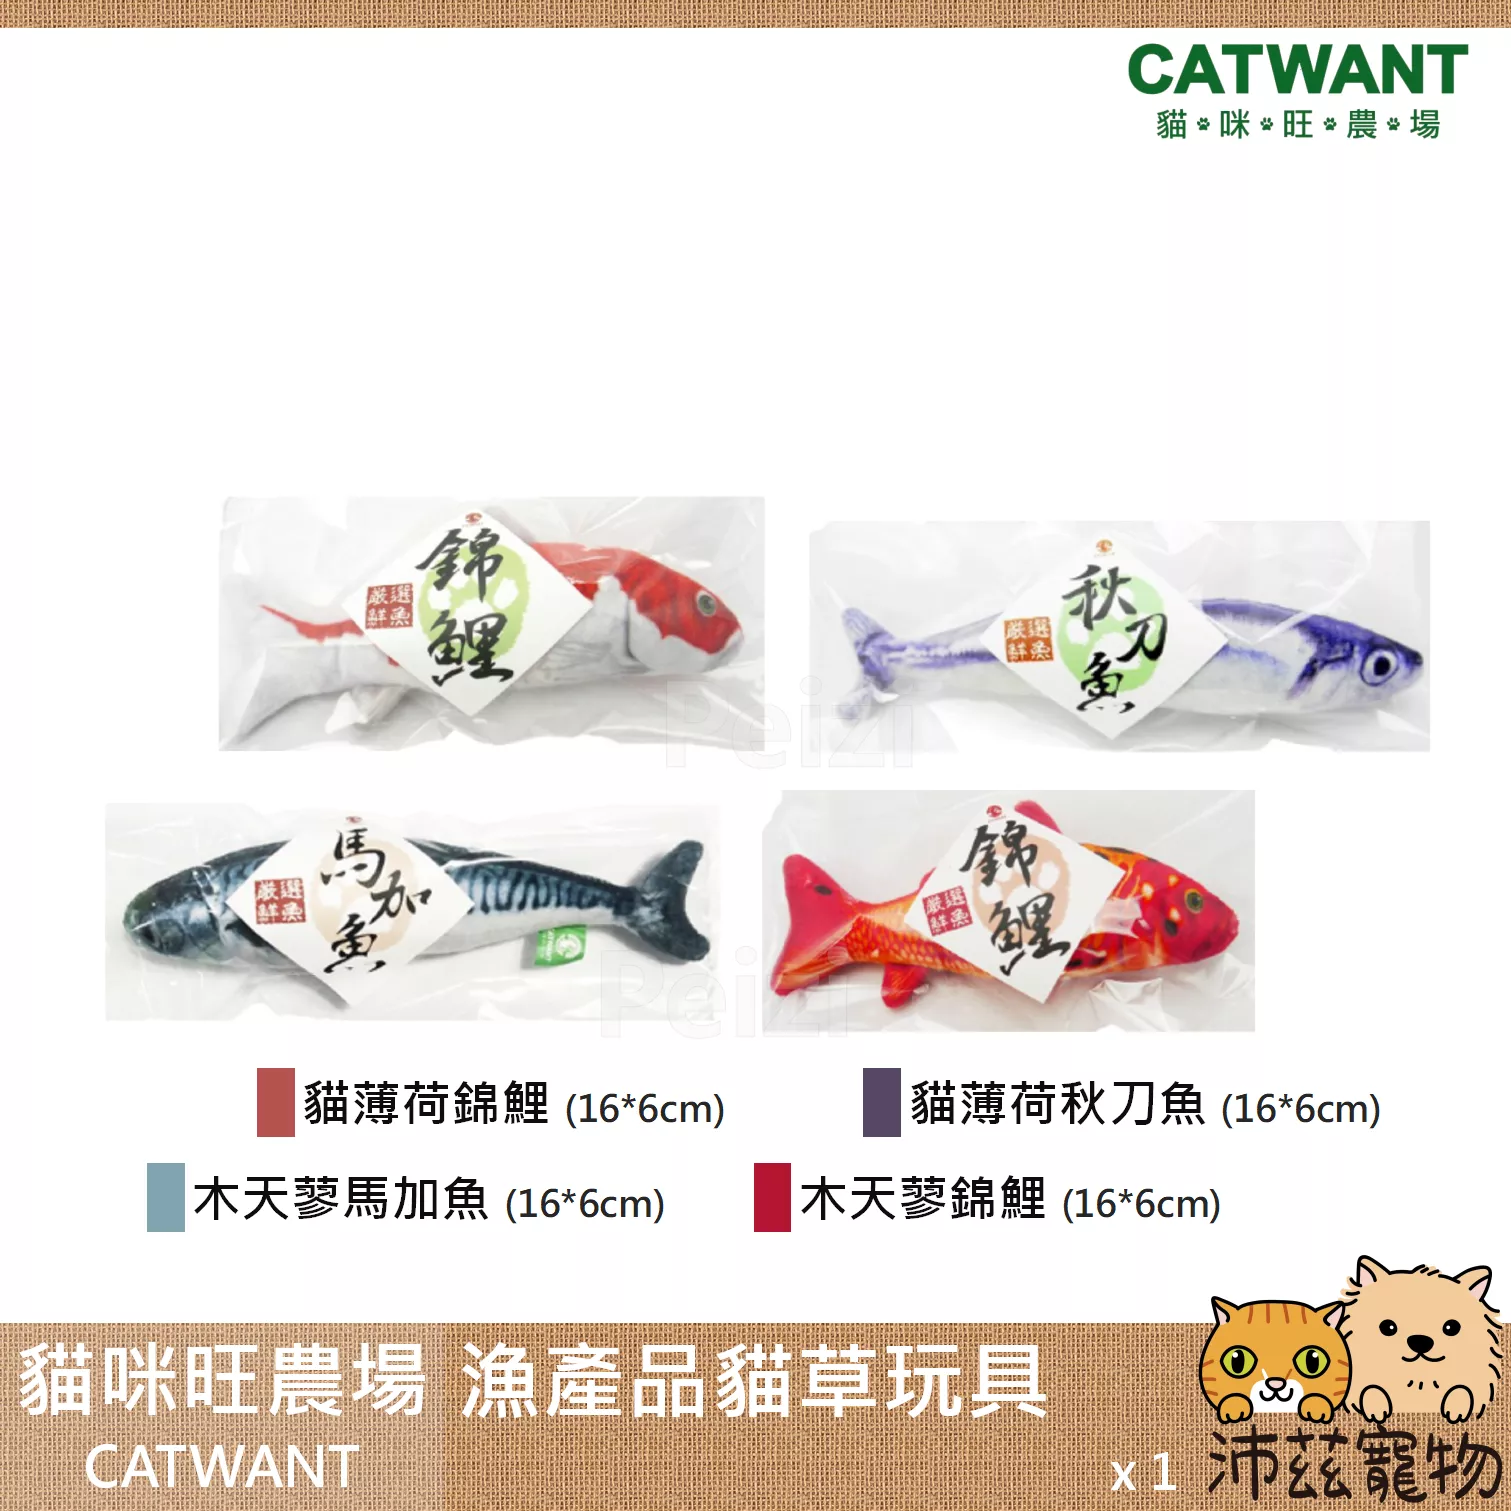 【貓咪旺農場 Catwant 漁產品造型貓草玩具】貓薄荷 木天蓼 台灣 貓玩具 貓 玩具